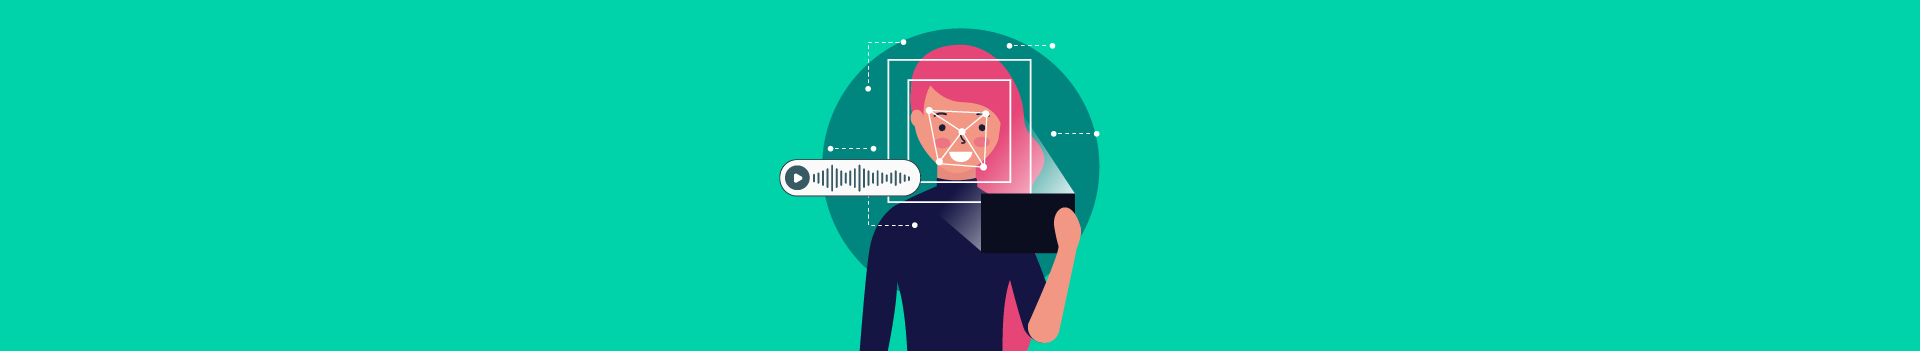 Deepfake: como a biometria de voz pode combater fraudes envolvendo a IA?